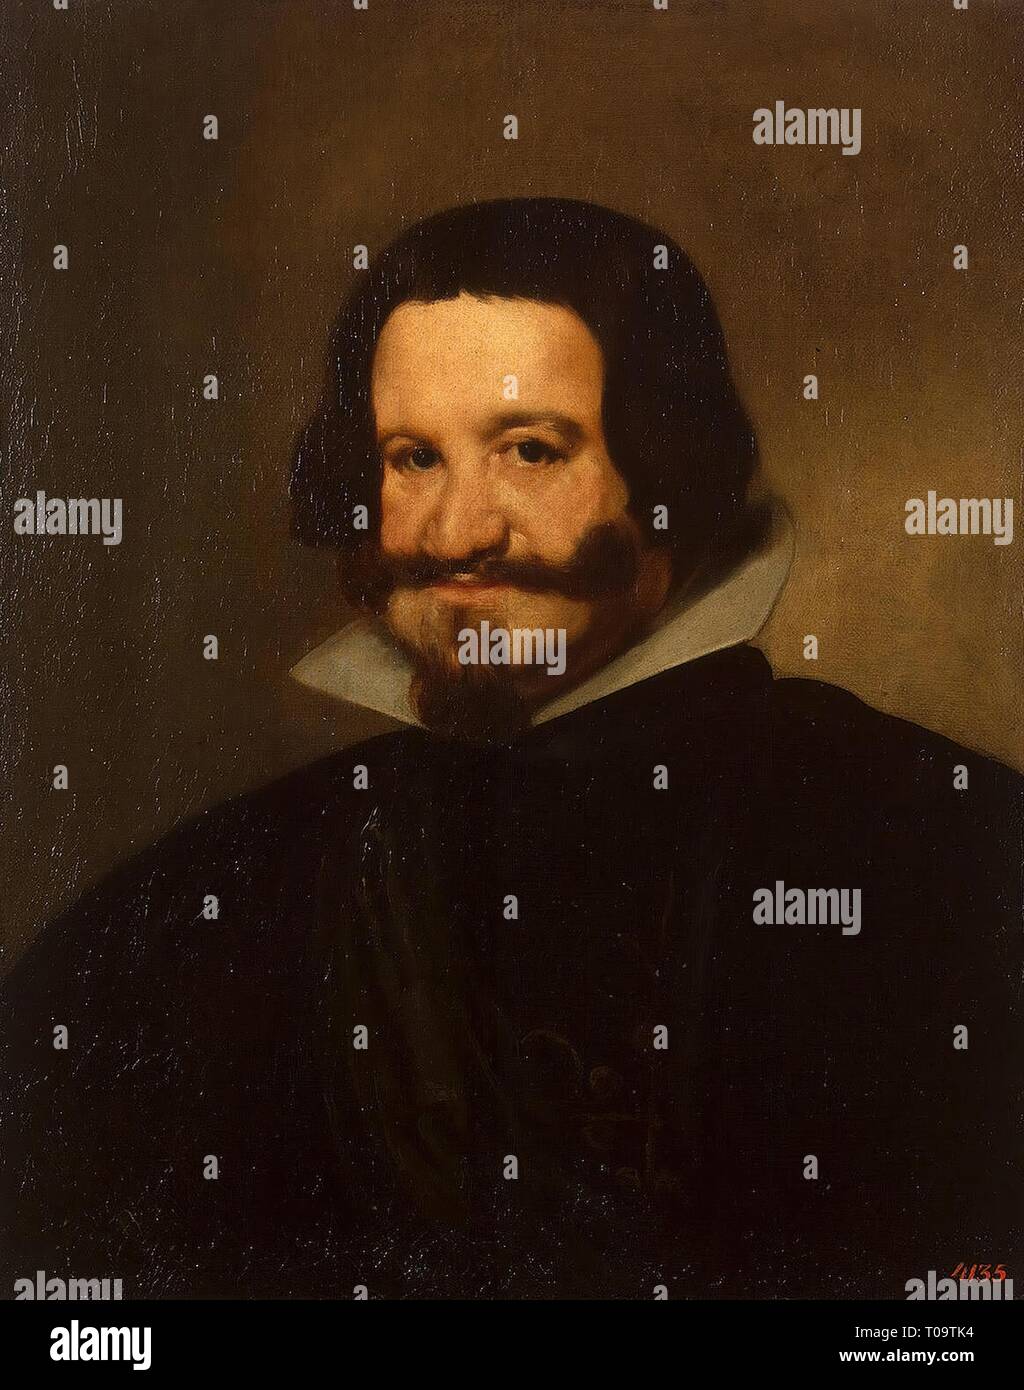 'Portrait de Gaspar de Guzman, Count-Duke Olivares'. L'Espagne, vers 1638. Dimensions : 67x54,5 cm. Musée : Etat de l'Ermitage, Saint-Pétersbourg. Auteur : Diego Velázquez de Silva . DIEGO VELAZQUEZ. Banque D'Images